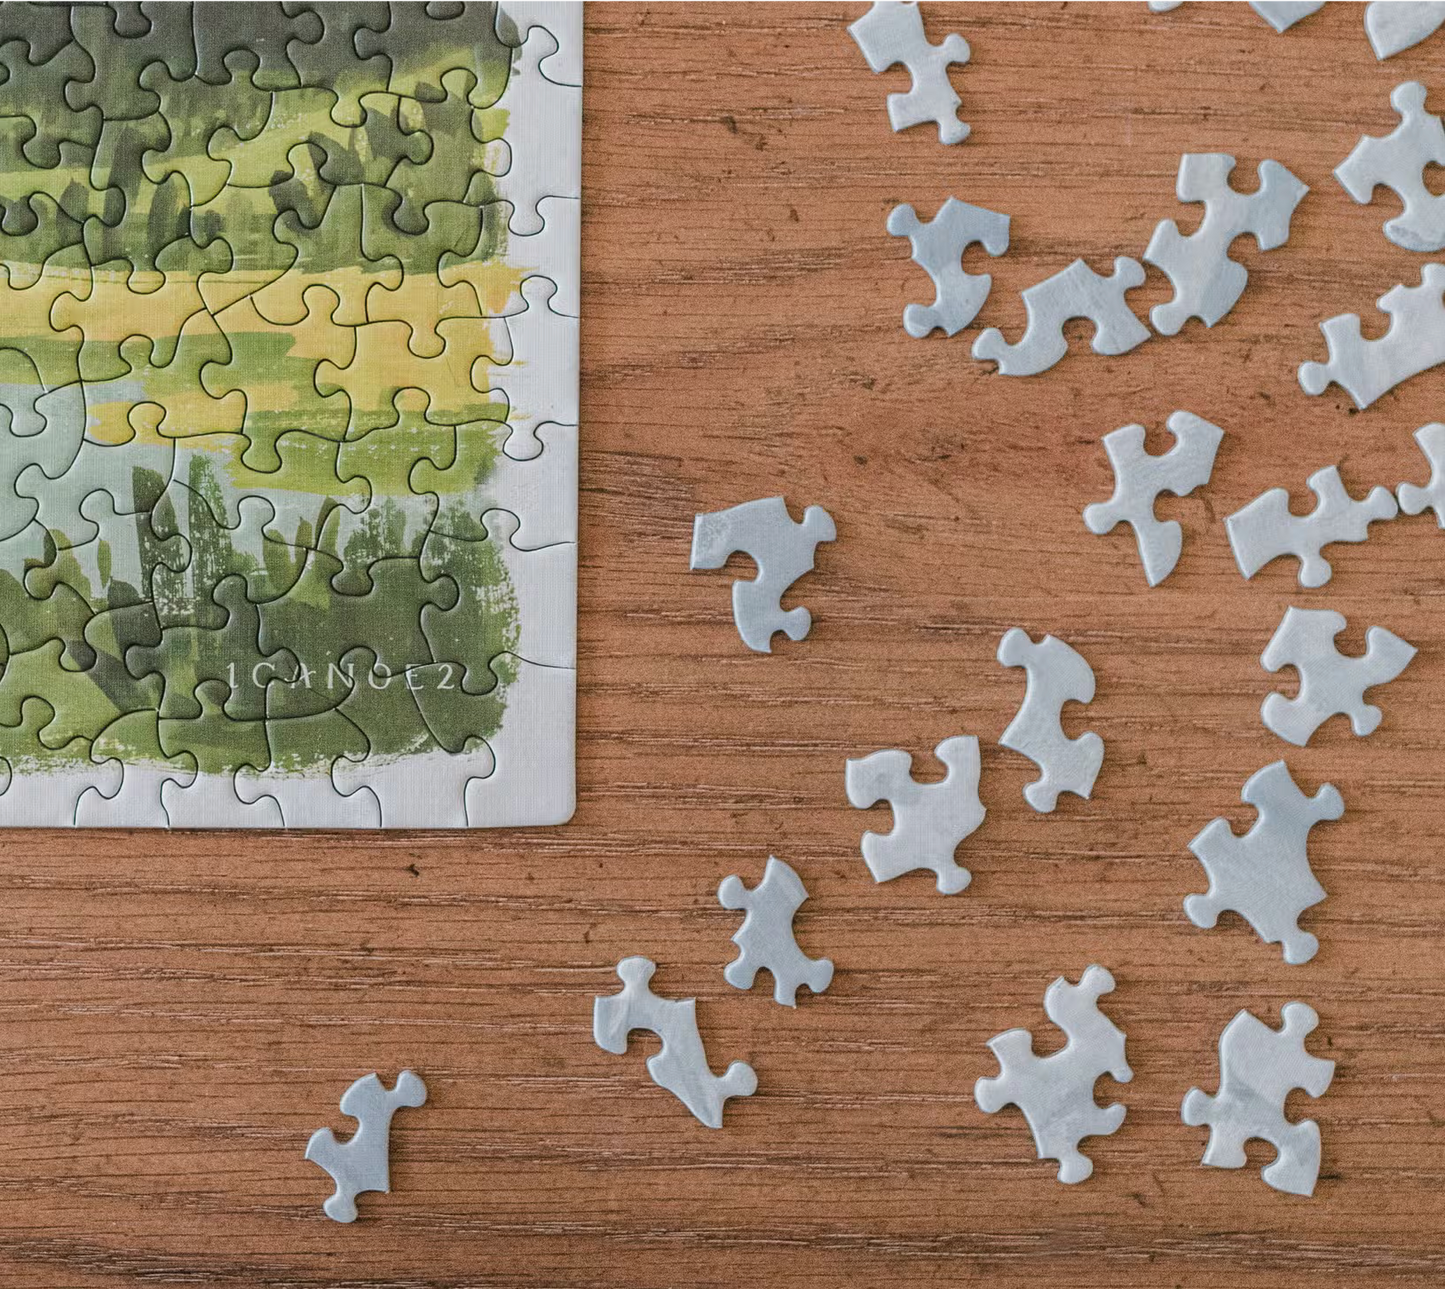 Stormy Sky - 1,000 Piece Jigsaw Puzzle